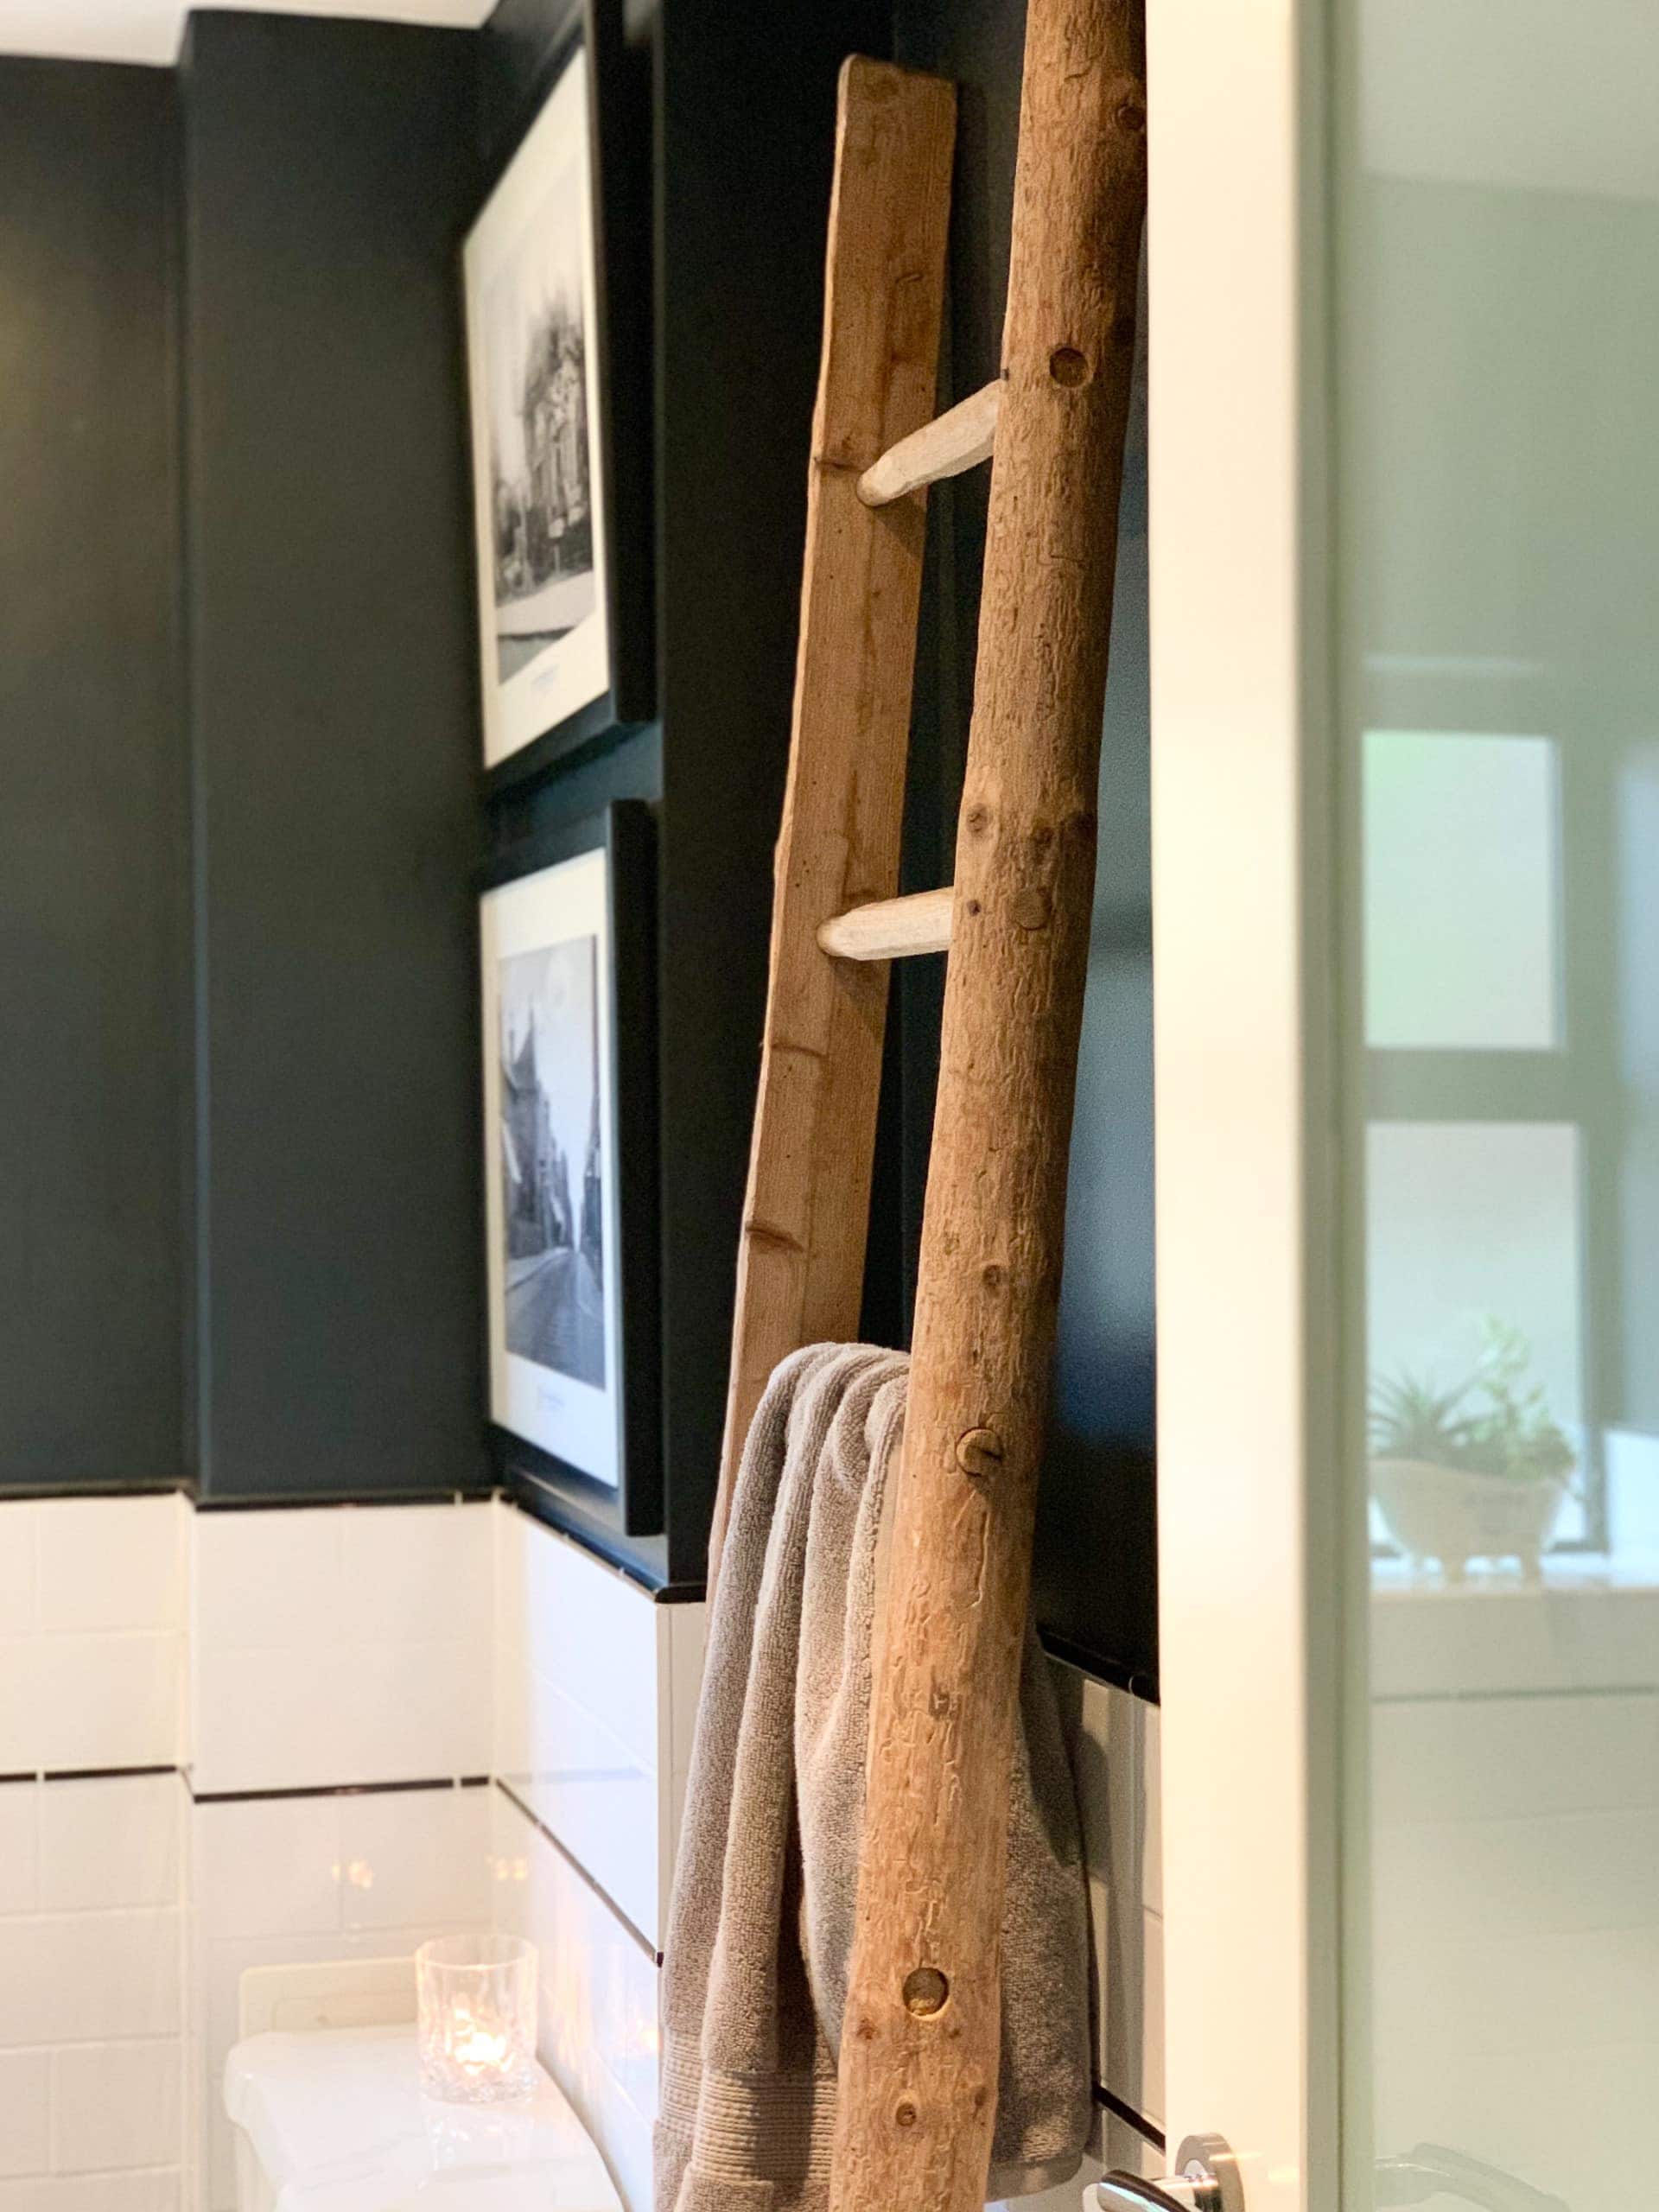 Towel ladder in a bathroom